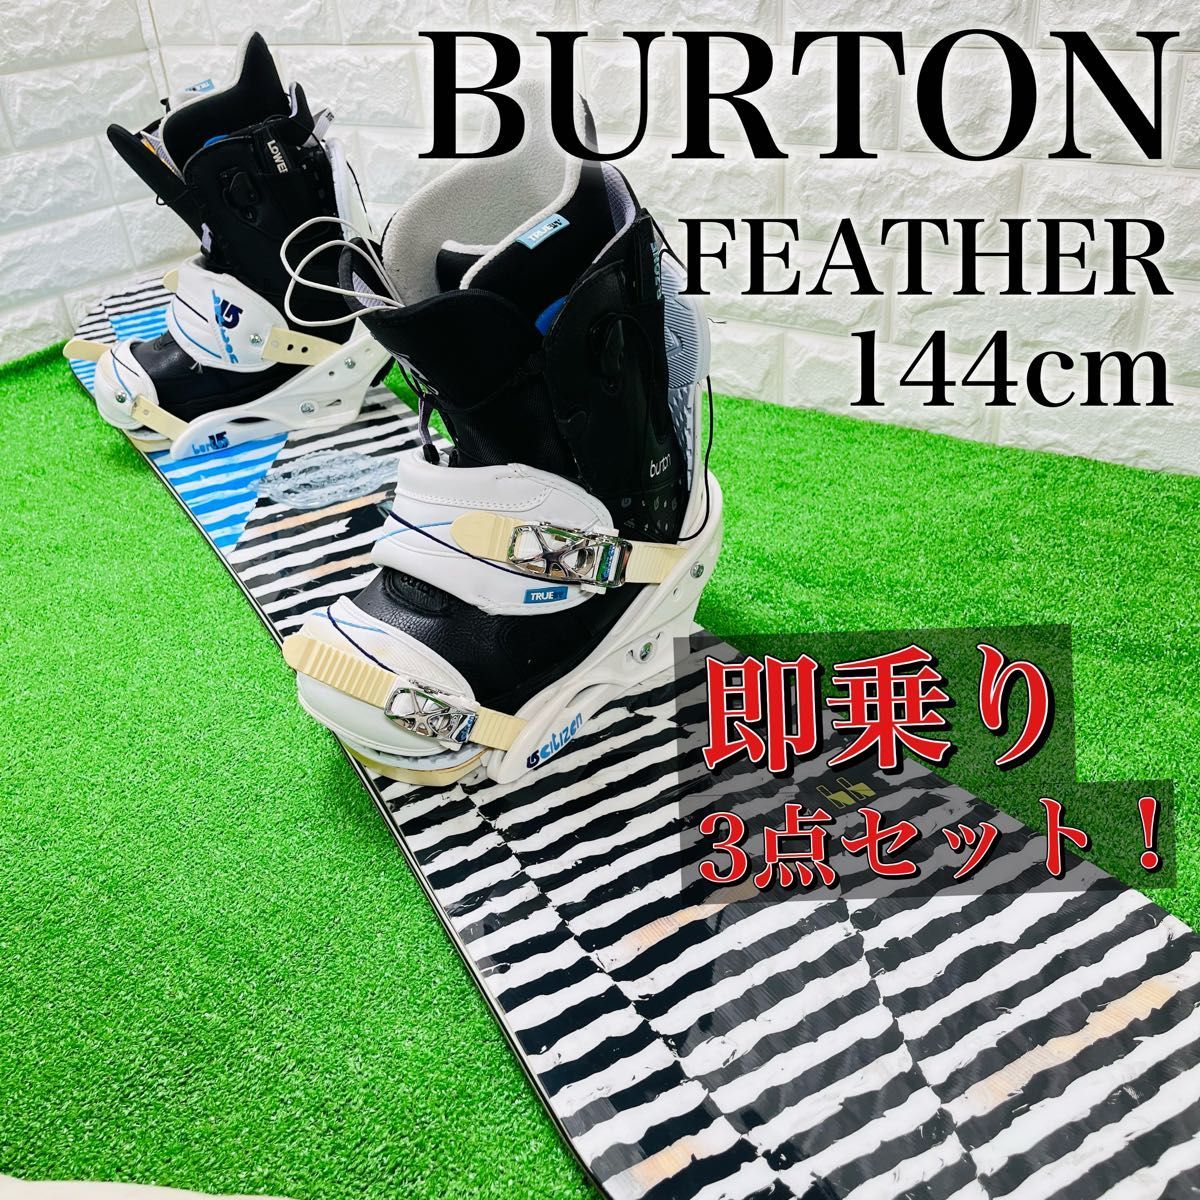 BURTON バートン FEATHER フェザー 144cm レディース スノーボード